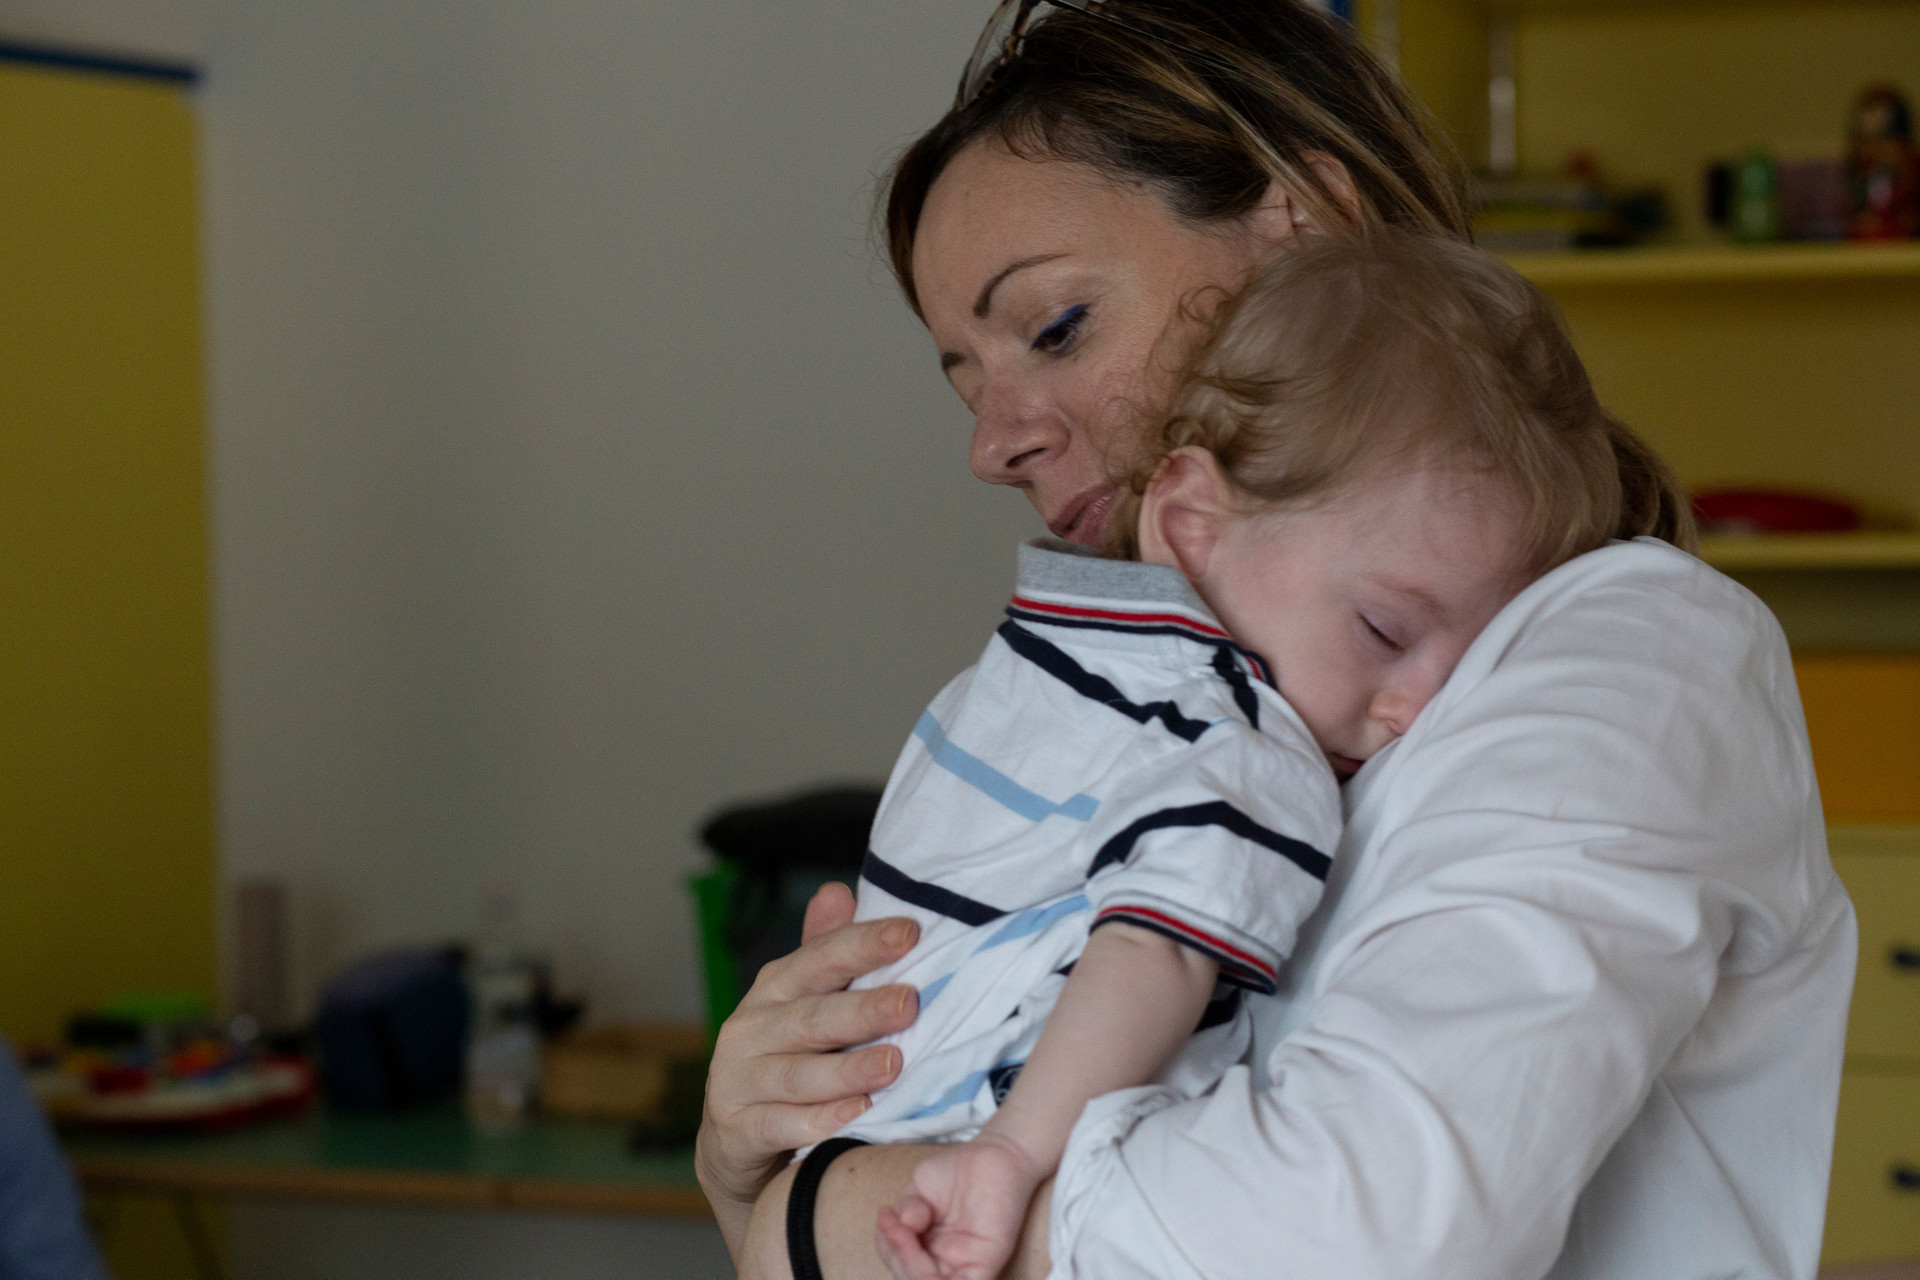 Gabriele dorme tranquillo in braccio a sua mamma, che lo regge accarezzandogli la schiena.